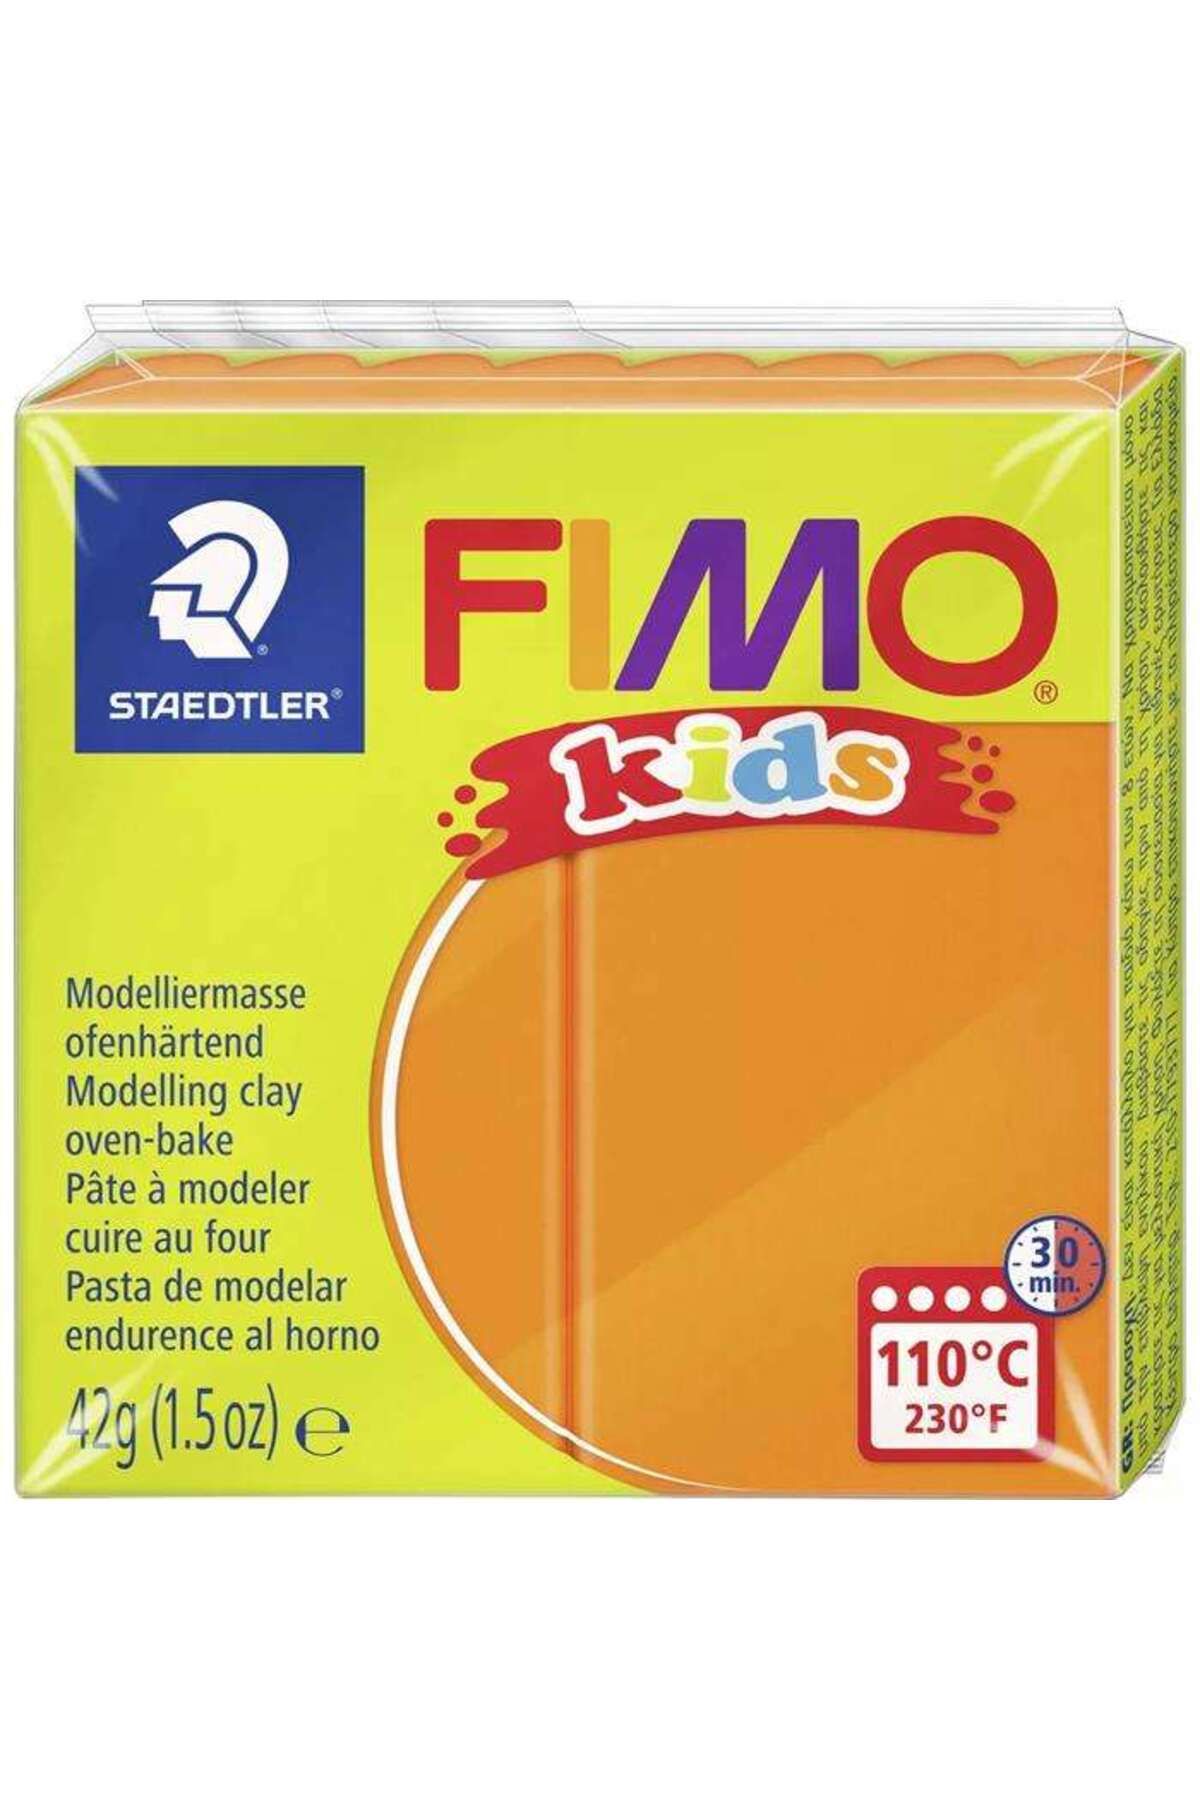 Staedtler Fimo Kids Modelleme Kili 42 g Orange 4